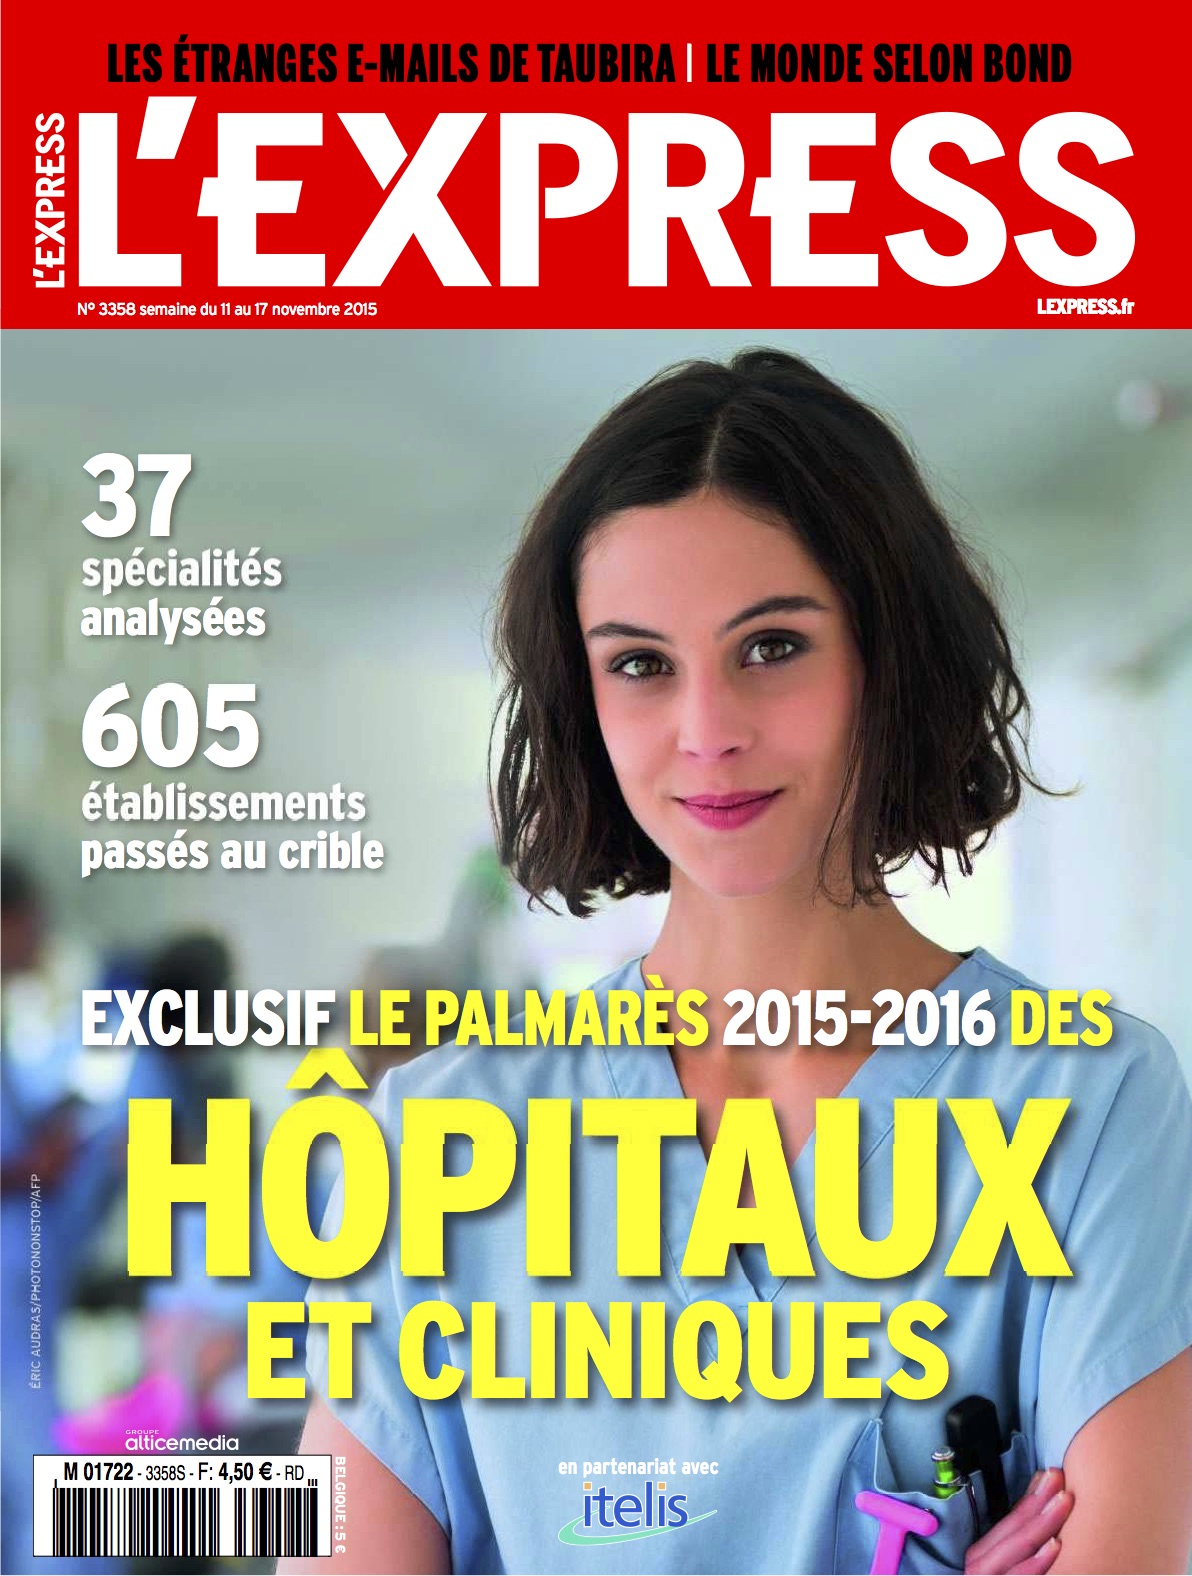 L'Express, Palmarès 2015 - 2016, Clinique Victor Hugo, 1ère à Paris, chirurgie du pied, hallux valgus